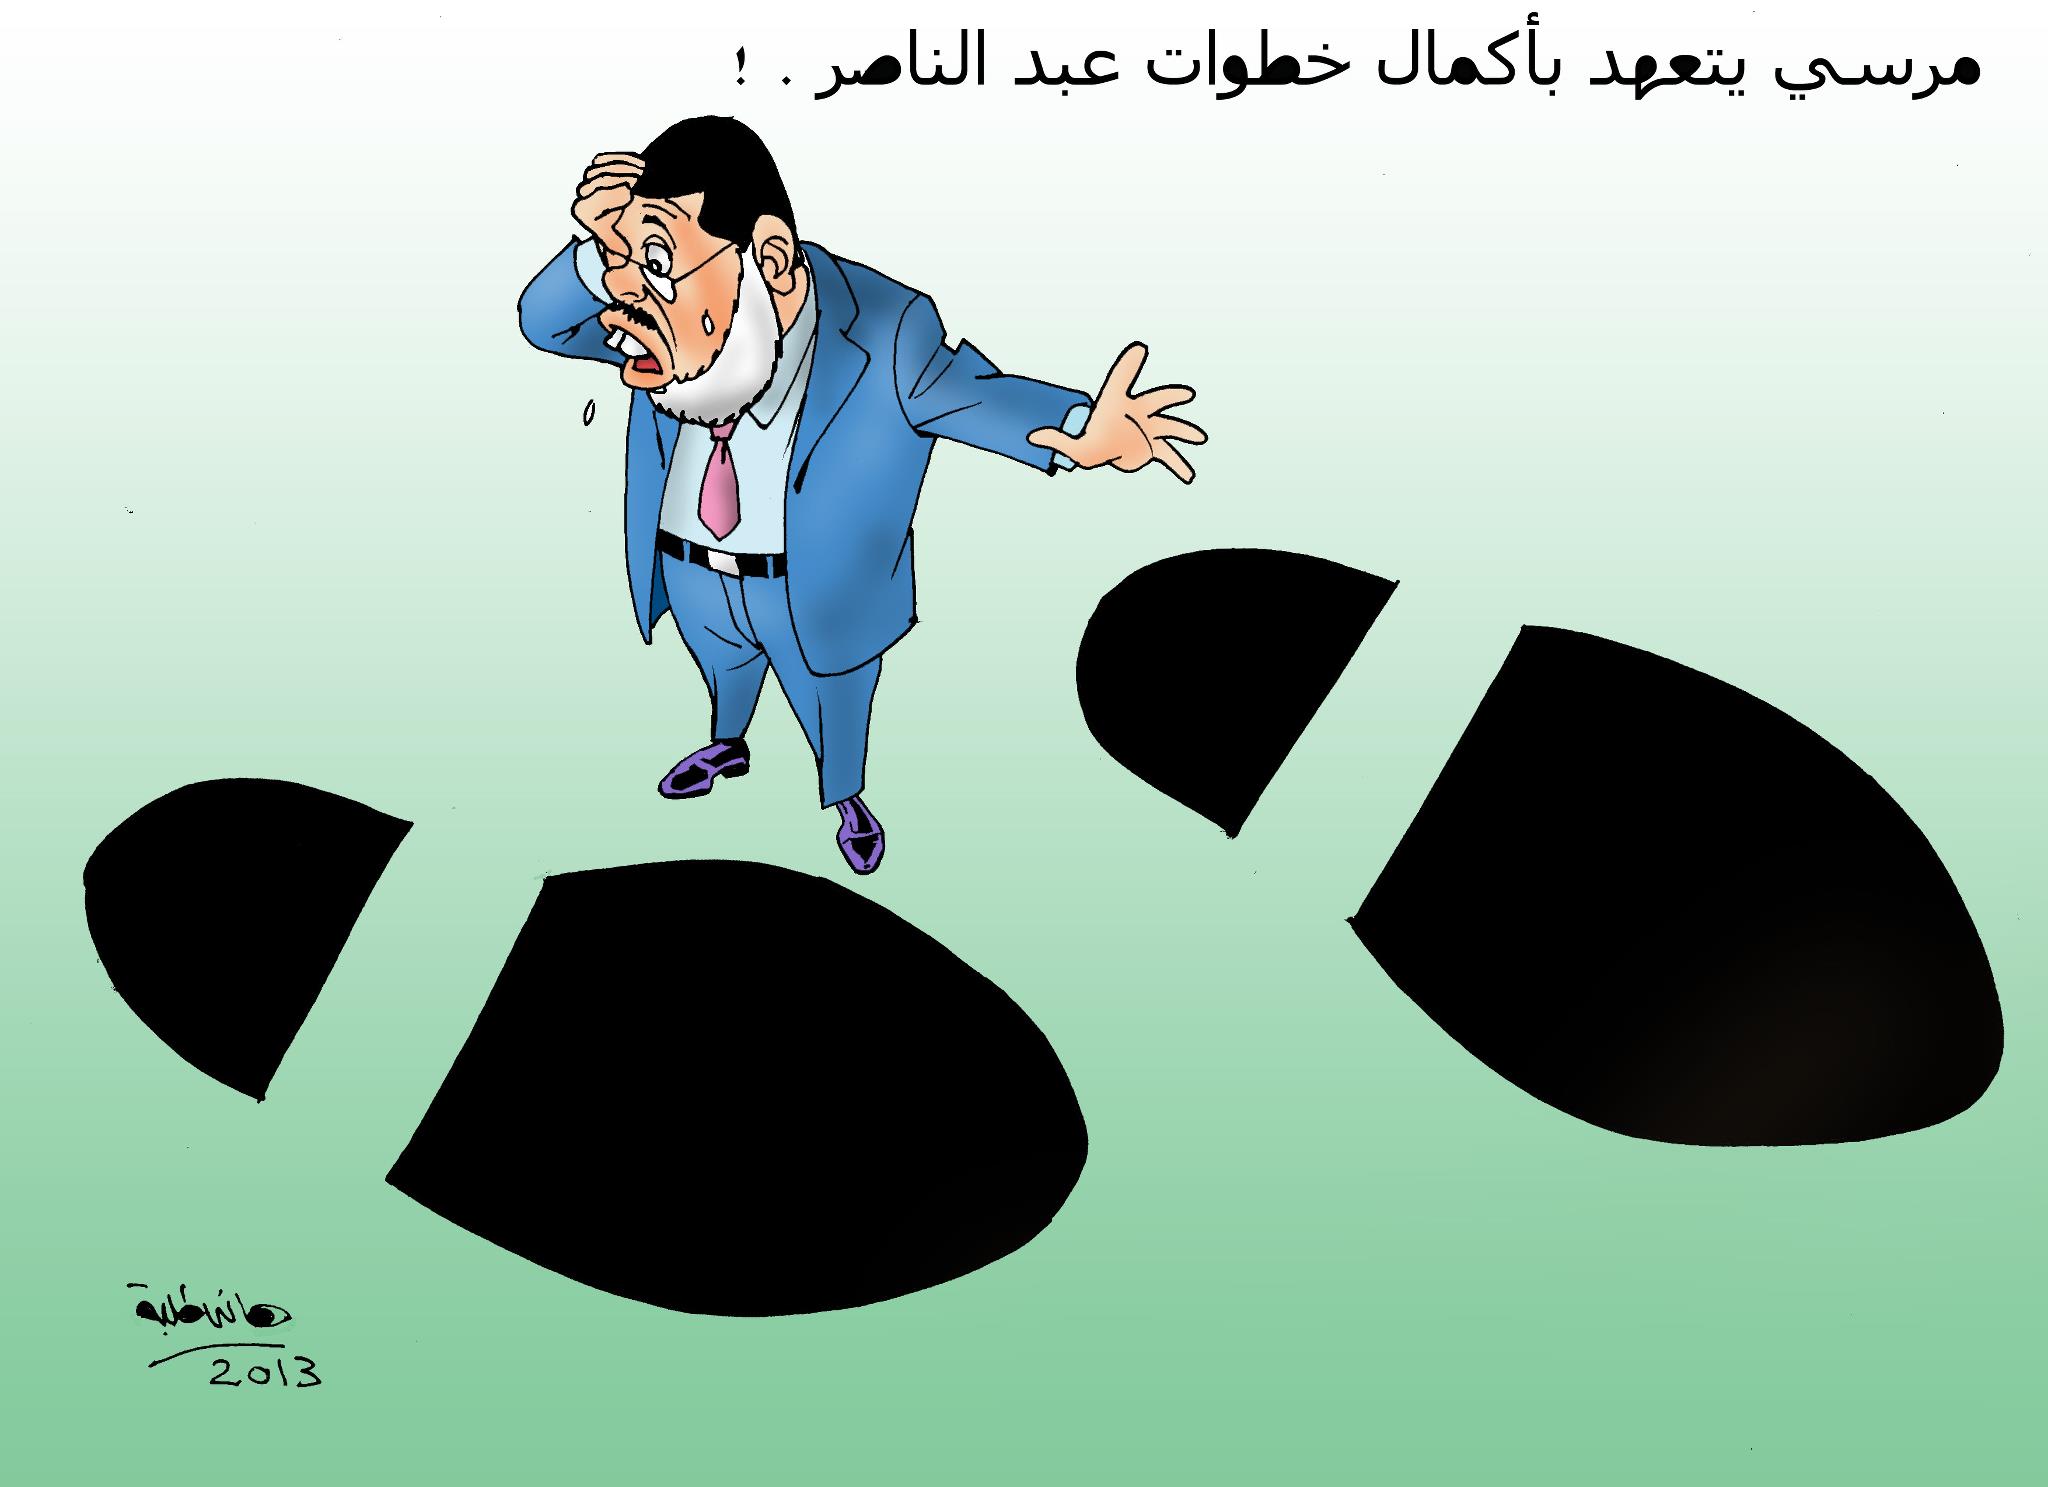 وما أدراك ـ يا مرسي ـ بالستينيات؟